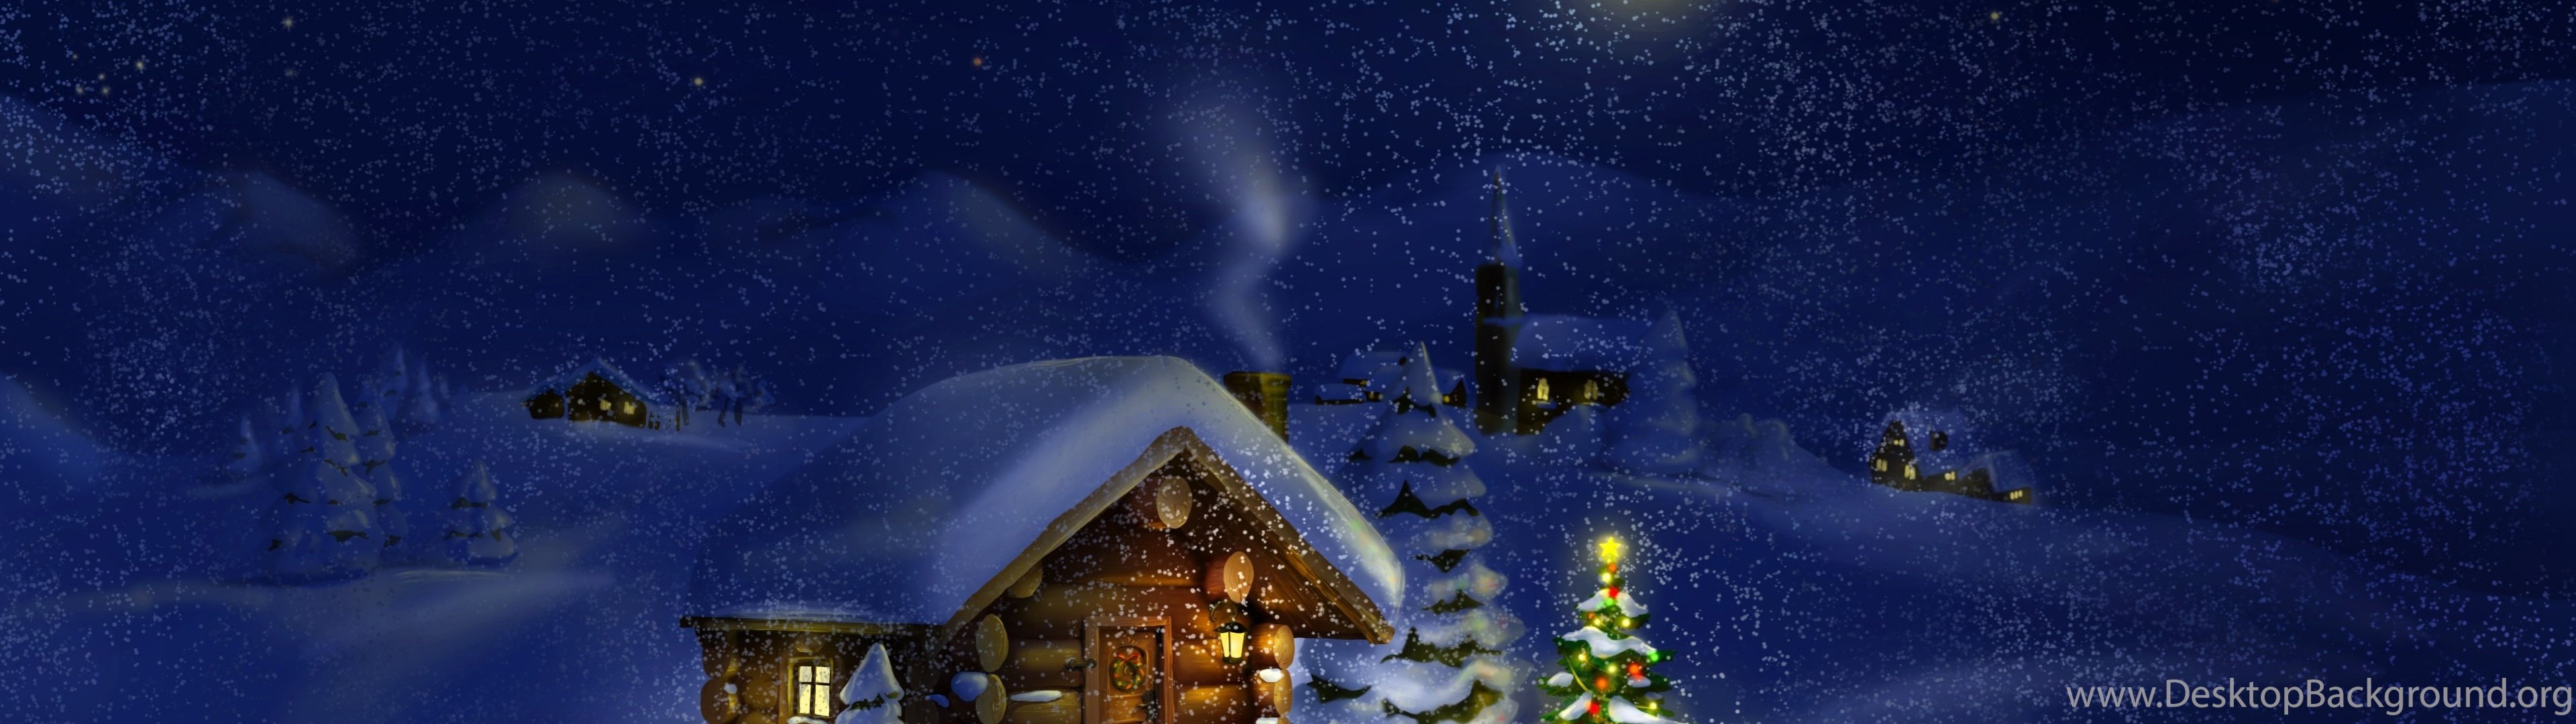 듀얼 모니터 크리스마스 벽지,겨울,하늘,밤,분위기,눈